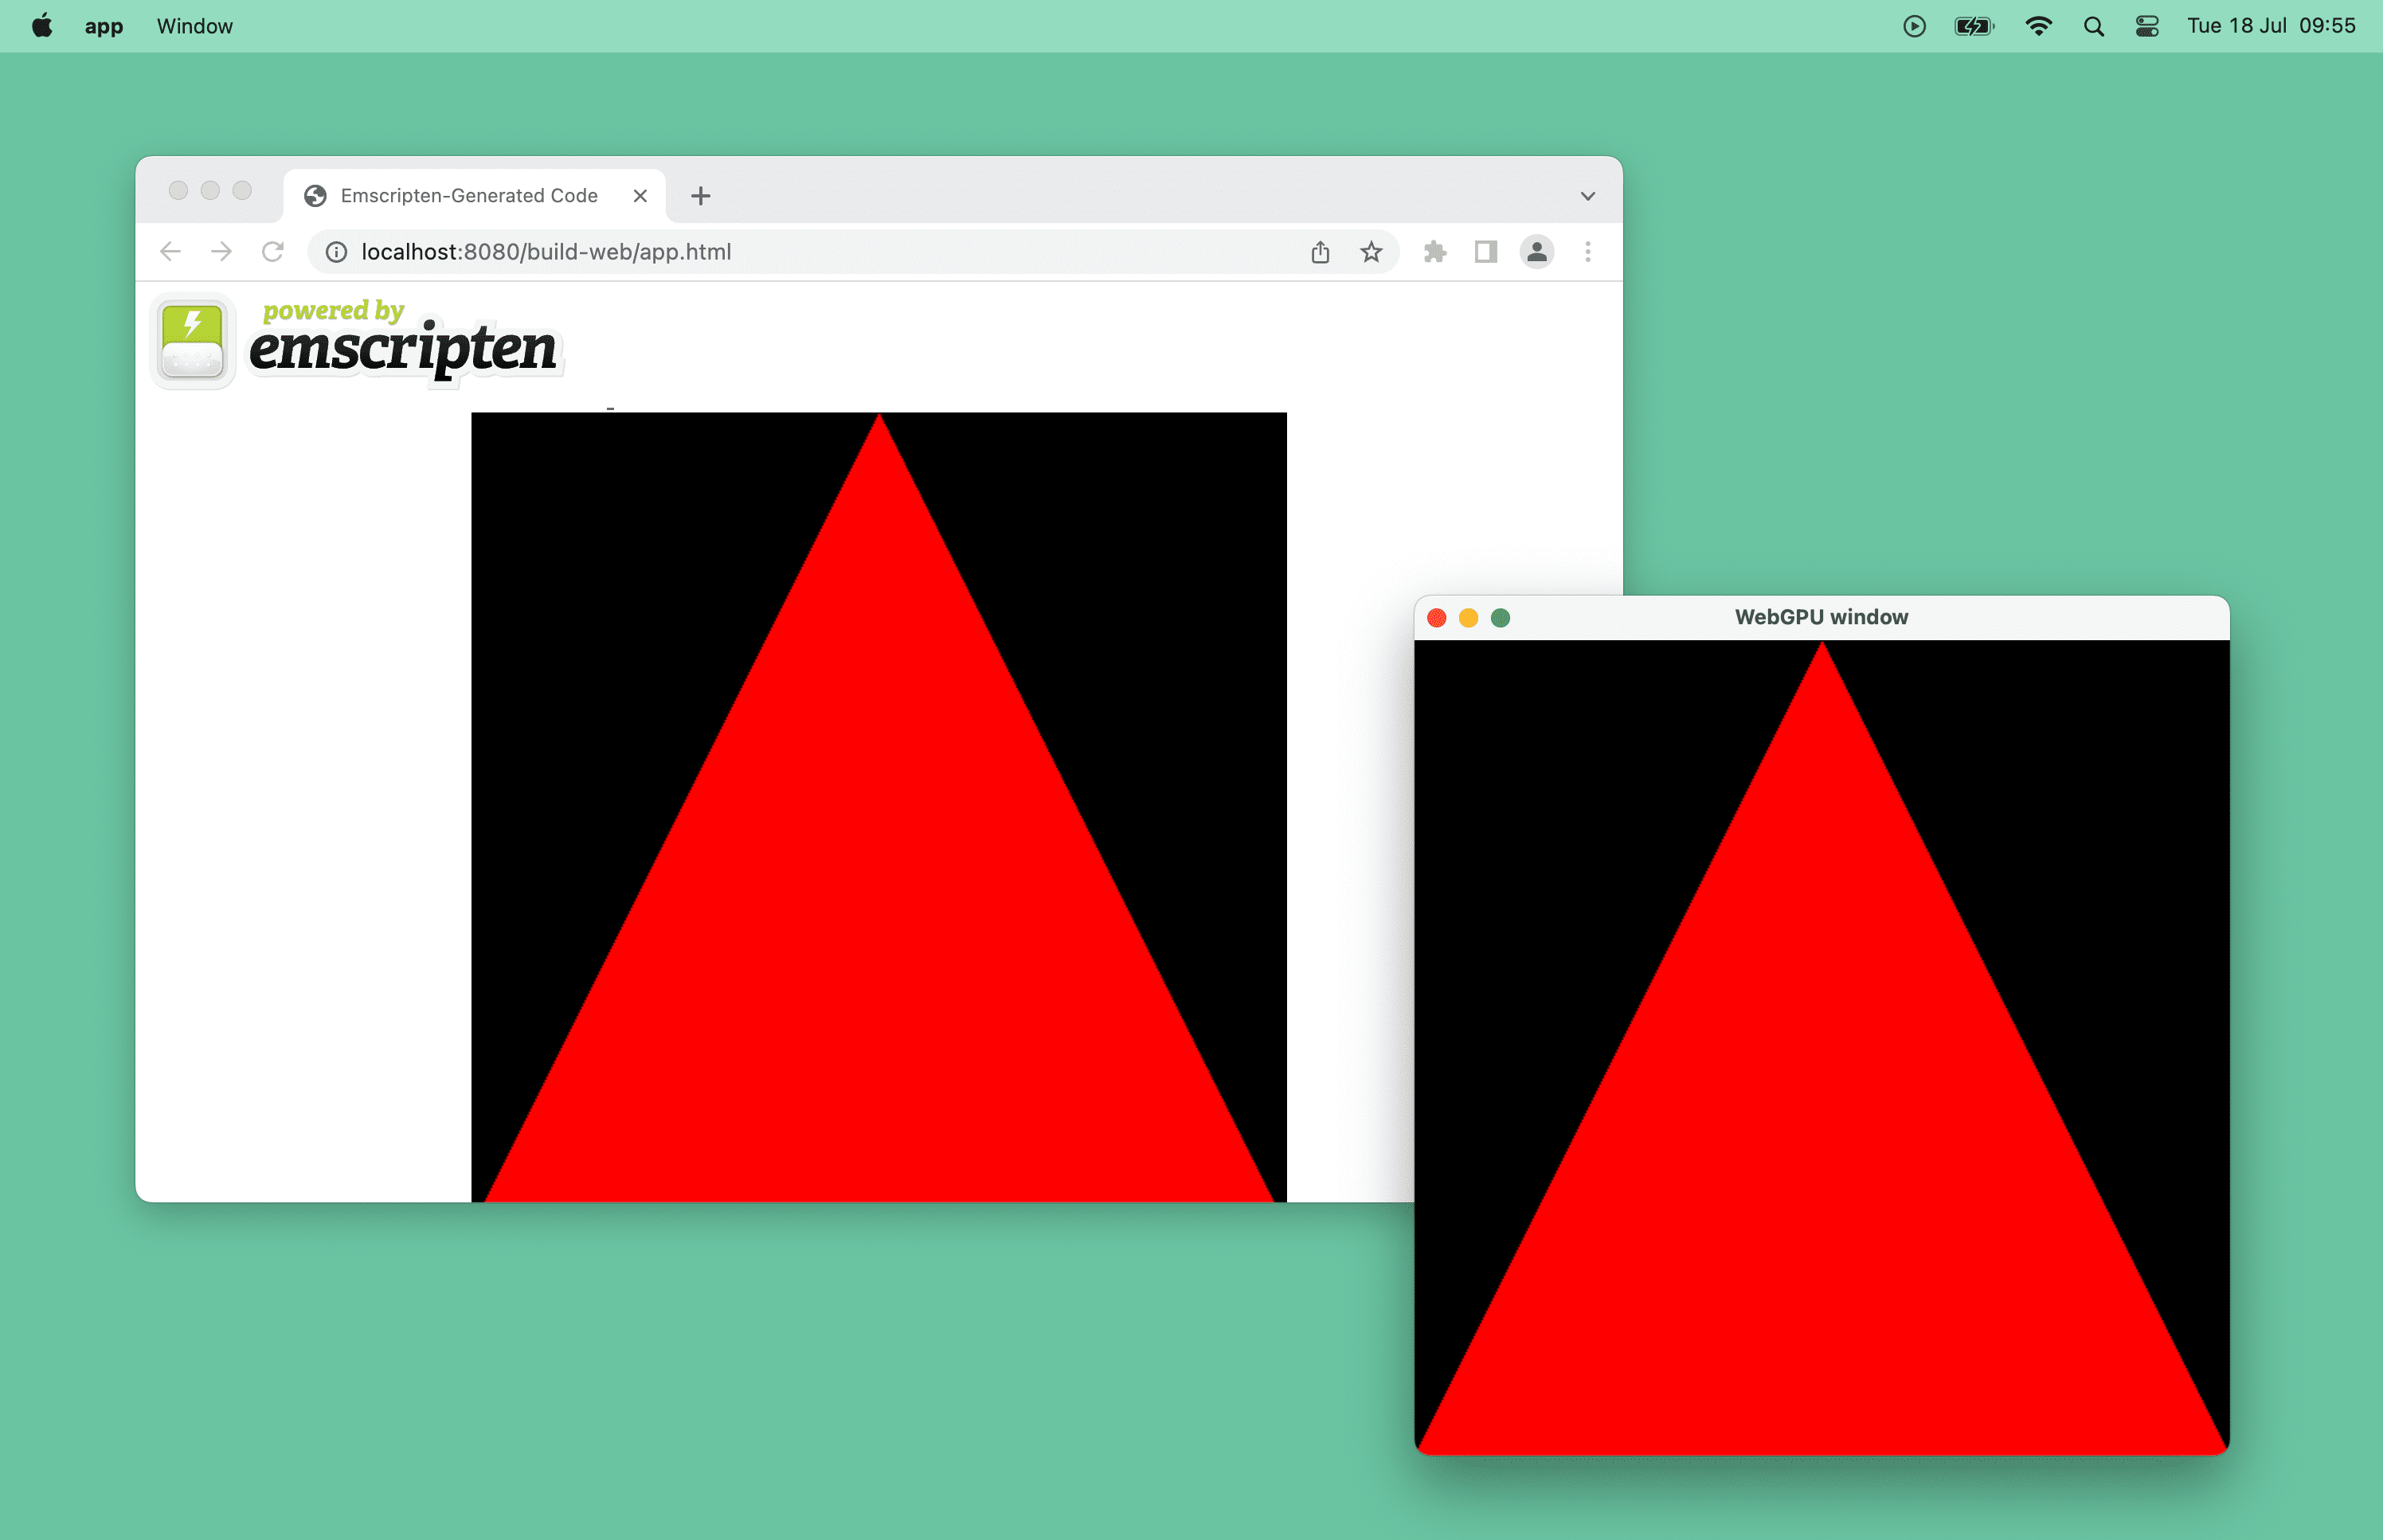 צילום מסך של משולש אדום שמופעל על ידי WebGPU בחלון דפדפן וחלון במחשב ב-macOS.